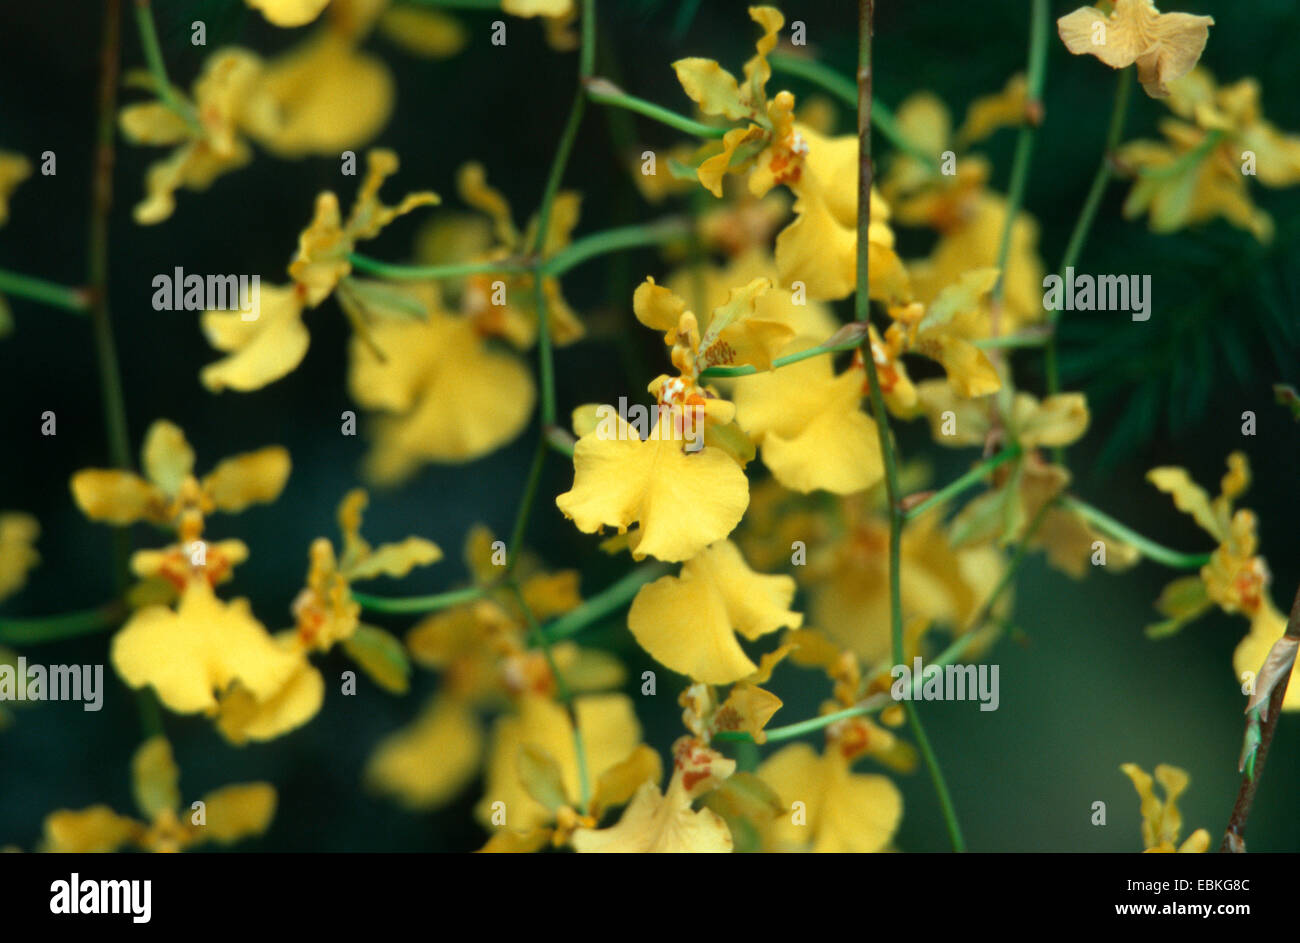 Oncidium (Oncidium fasciculatum), flowers Stock Photo